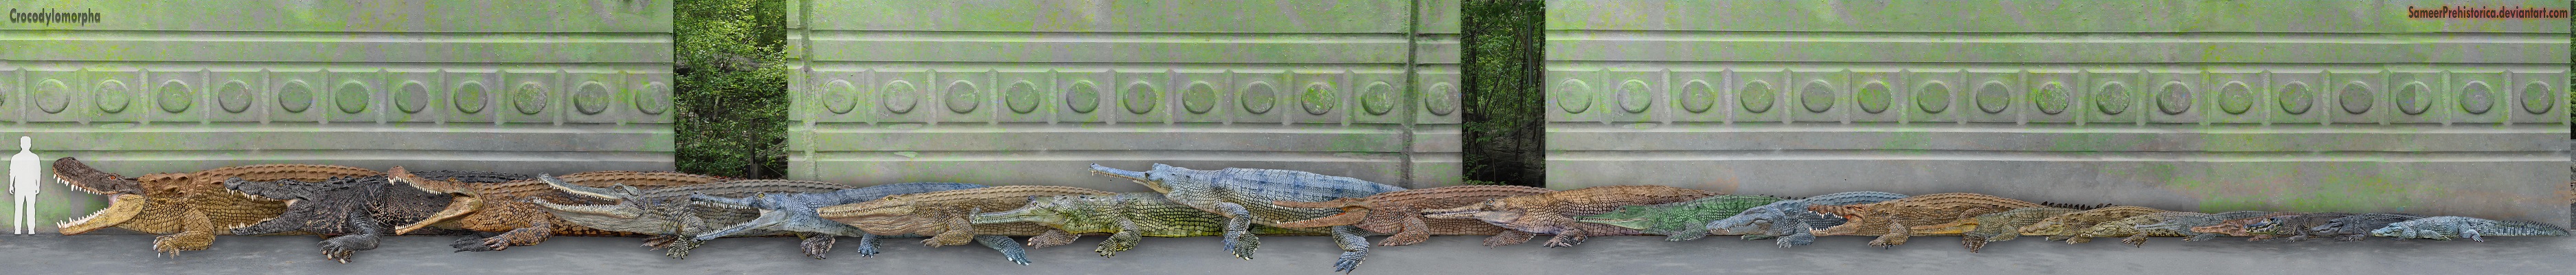 Crocodilians Size Comparison | Dinosaur Home